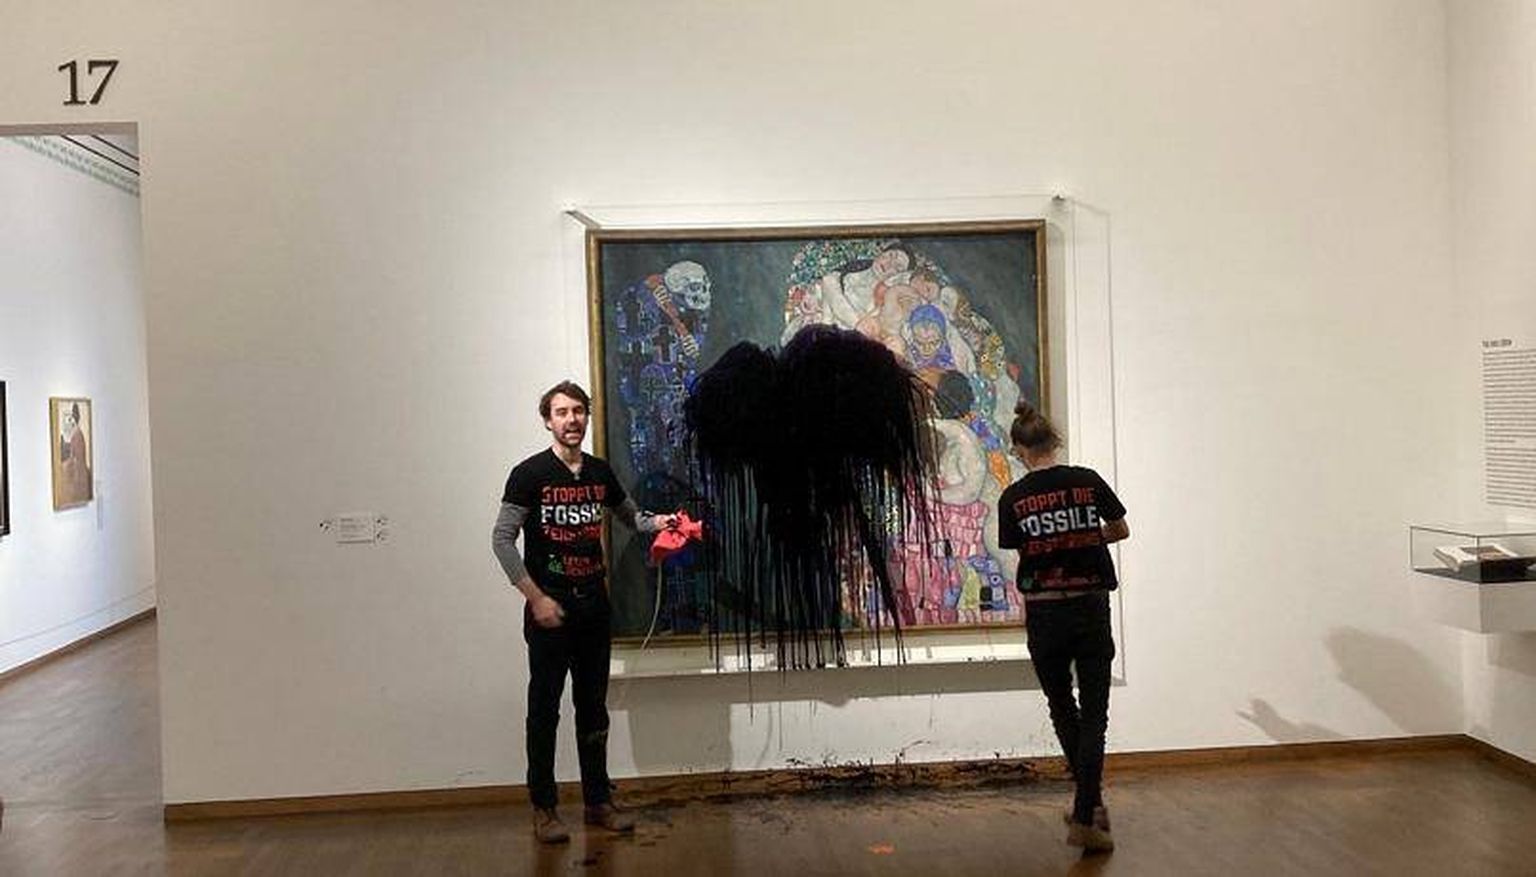 Активисты-экологи обрызгали шедевр Густава Климта в музее Вены черной жидкостью.